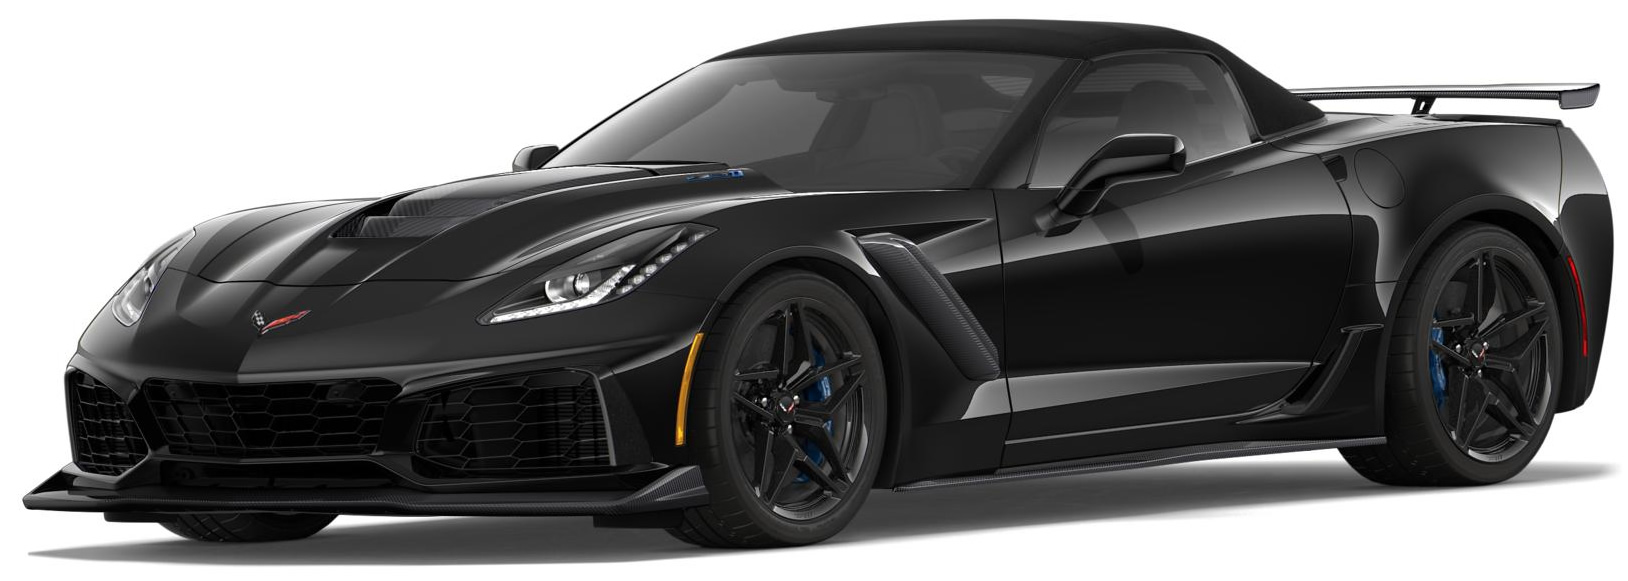 2019 Corvette ZR1 Convertible in Black